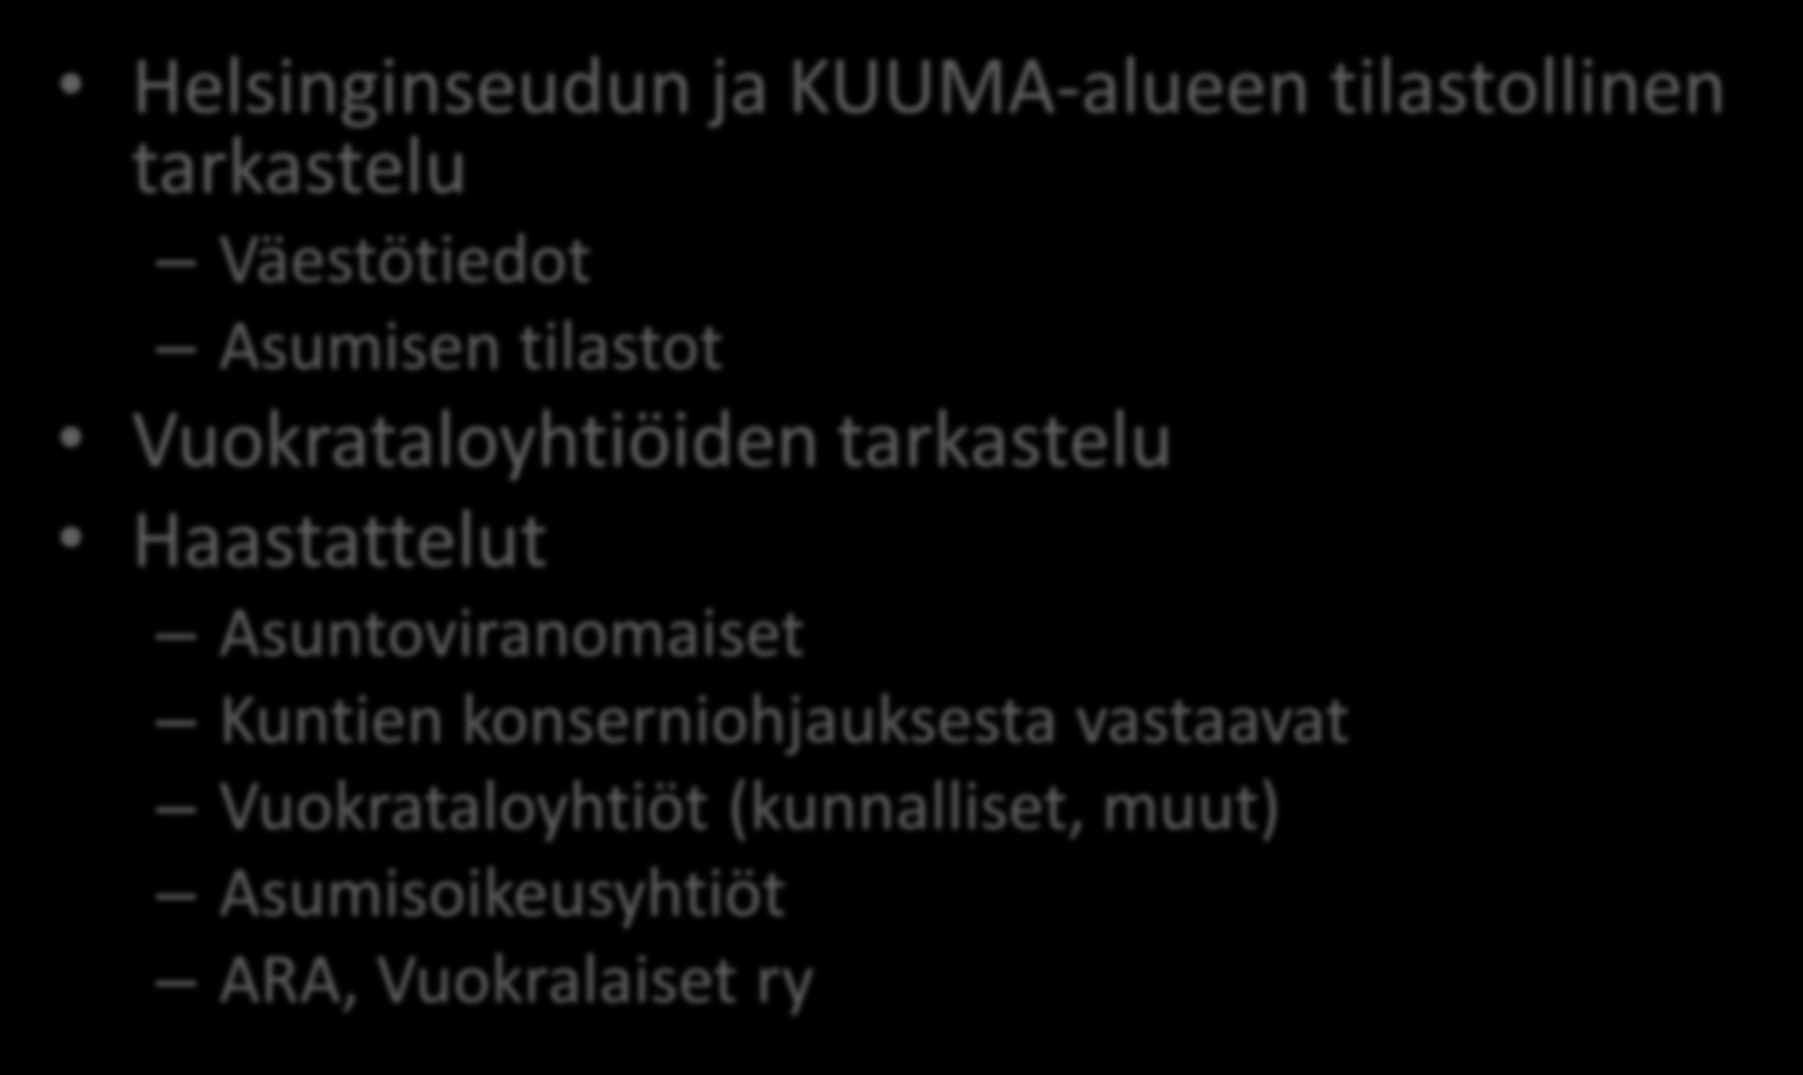 Selvityksen toteutus Helsinginseudun ja KUUMA-alueen tilastollinen tarkastelu Väestötiedot Asumisen tilastot Vuokrataloyhtiöiden tarkastelu